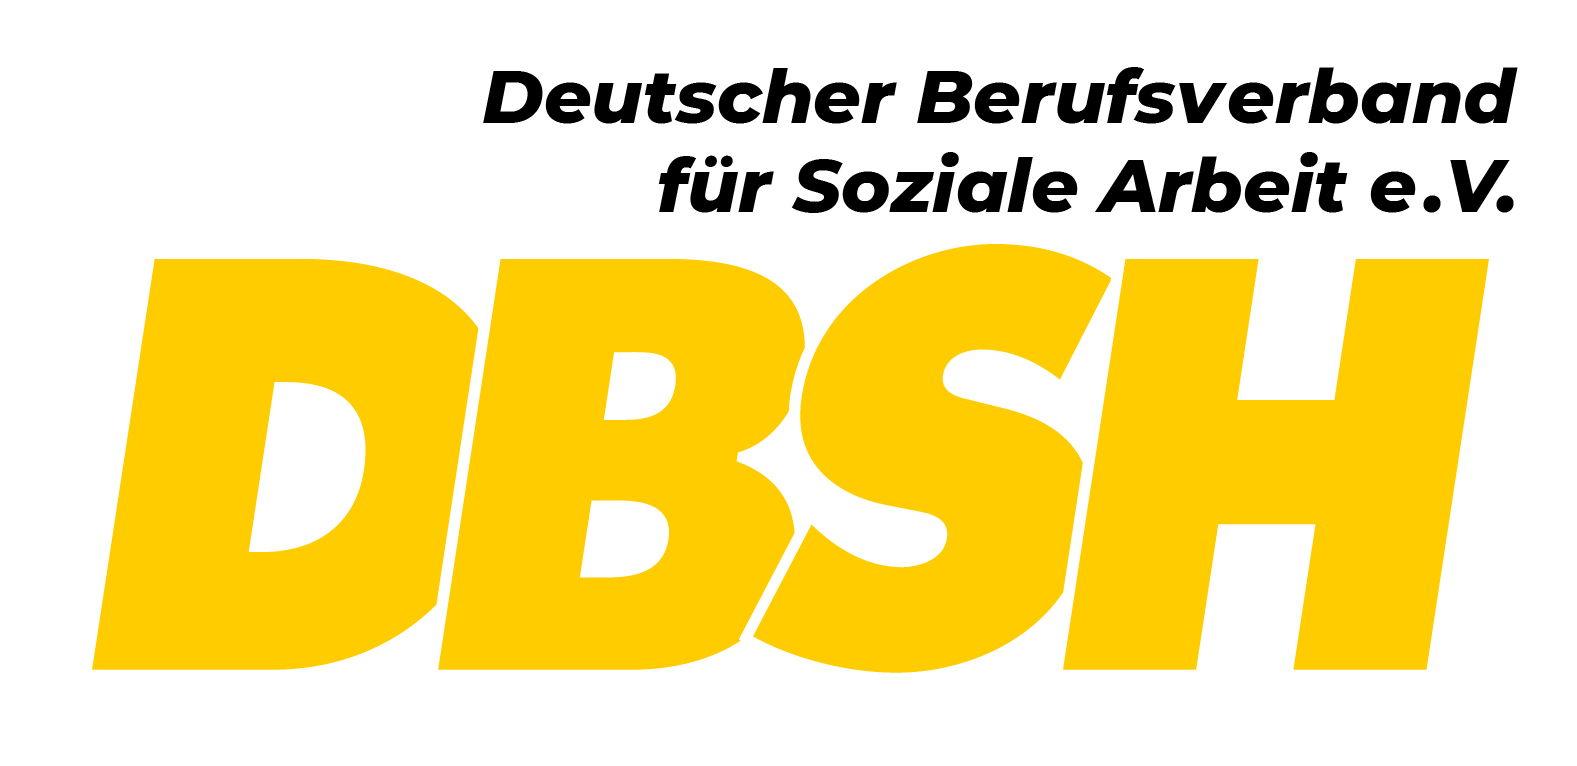 Deutscher Berufsverband für Soziale Arbeit e. V.